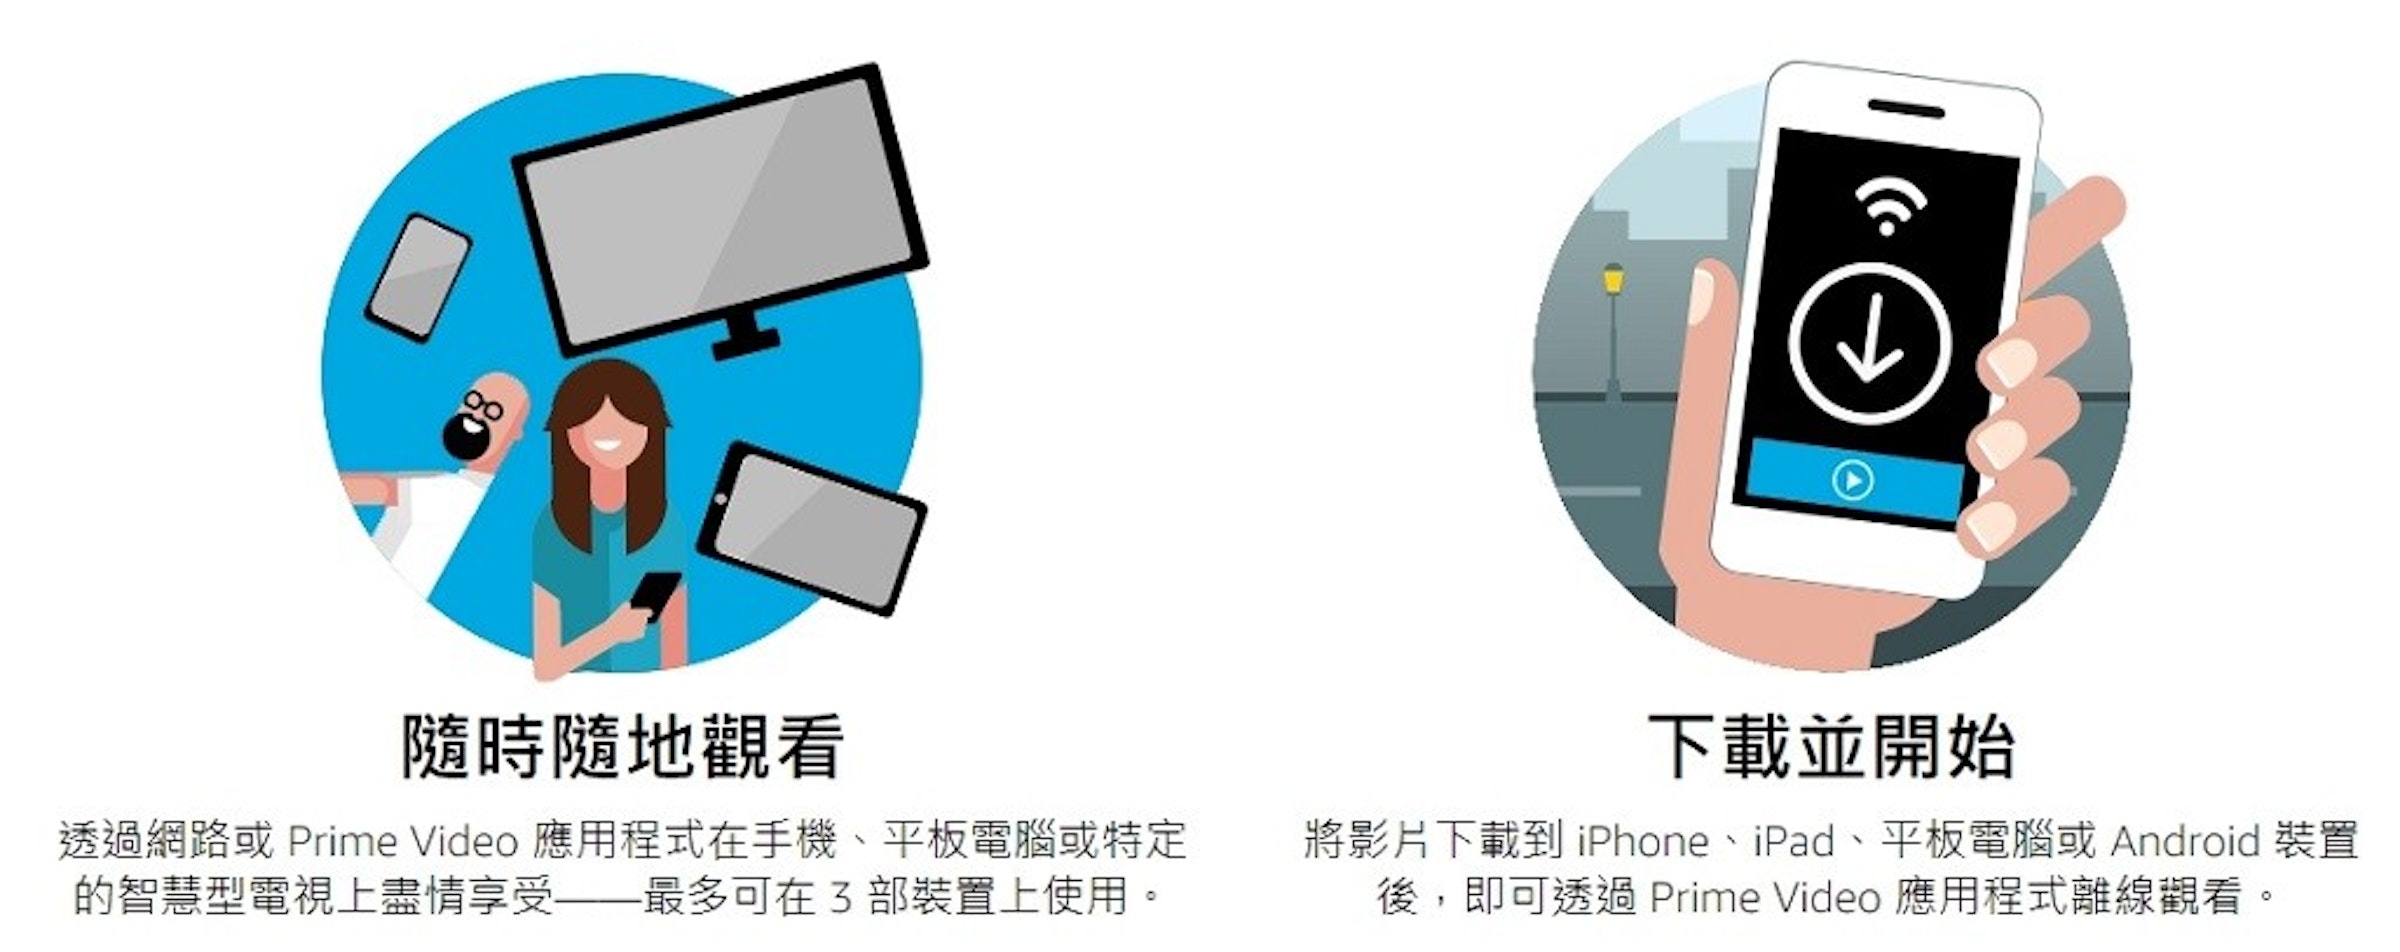 台灣amazon Prime Video訂閱方法 方案費用 中文字幕 語言支援 取消訂閱教學 裝置 157573 癮科技cool3c